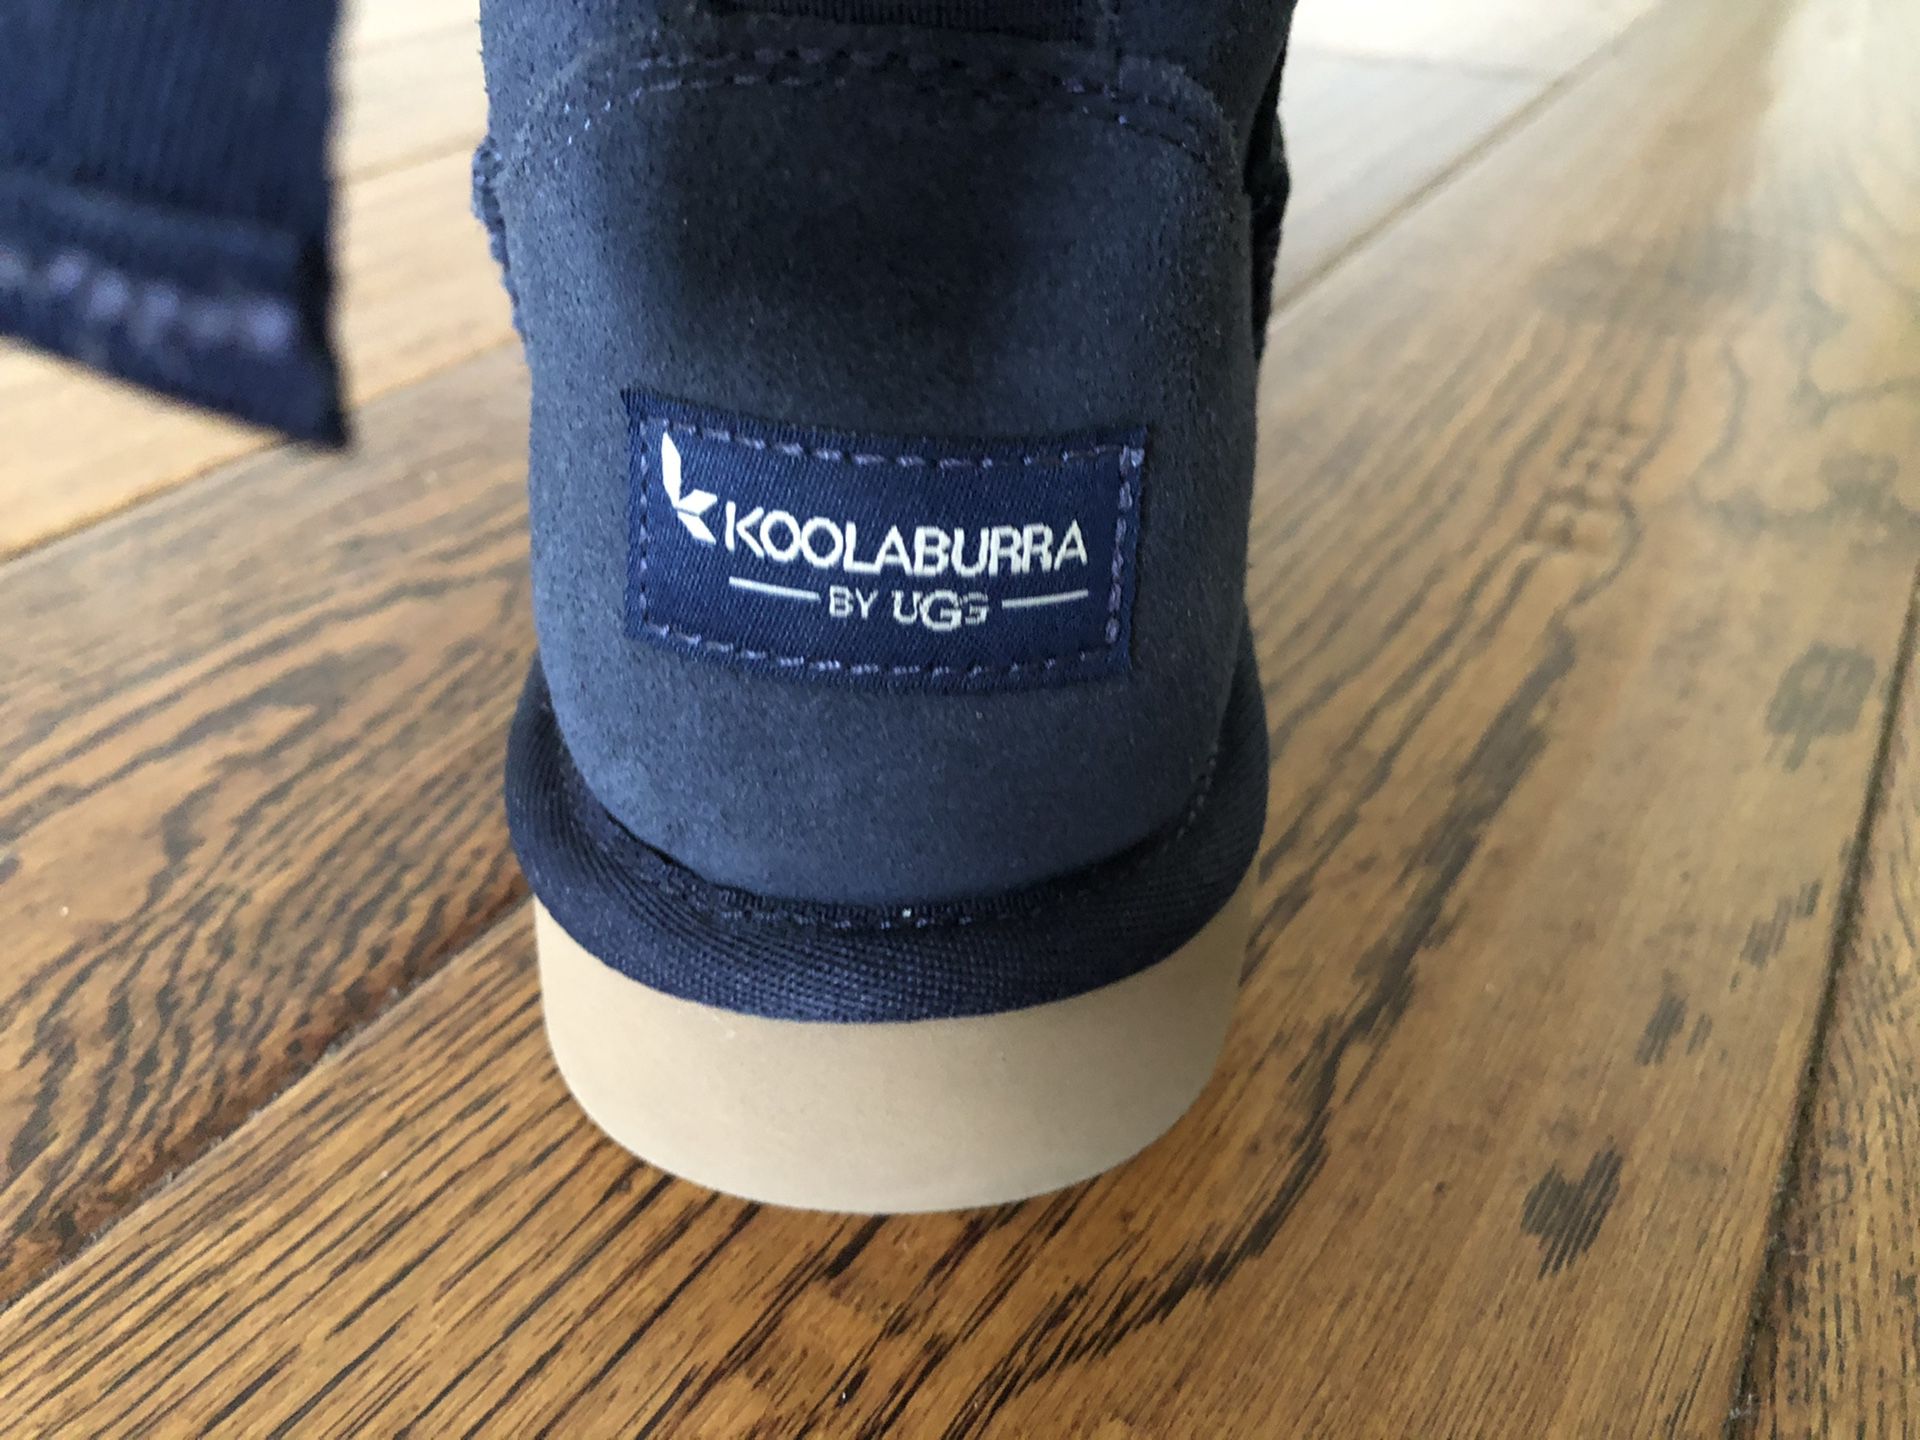 Koolaburra by UGG size: 6, brand new in box